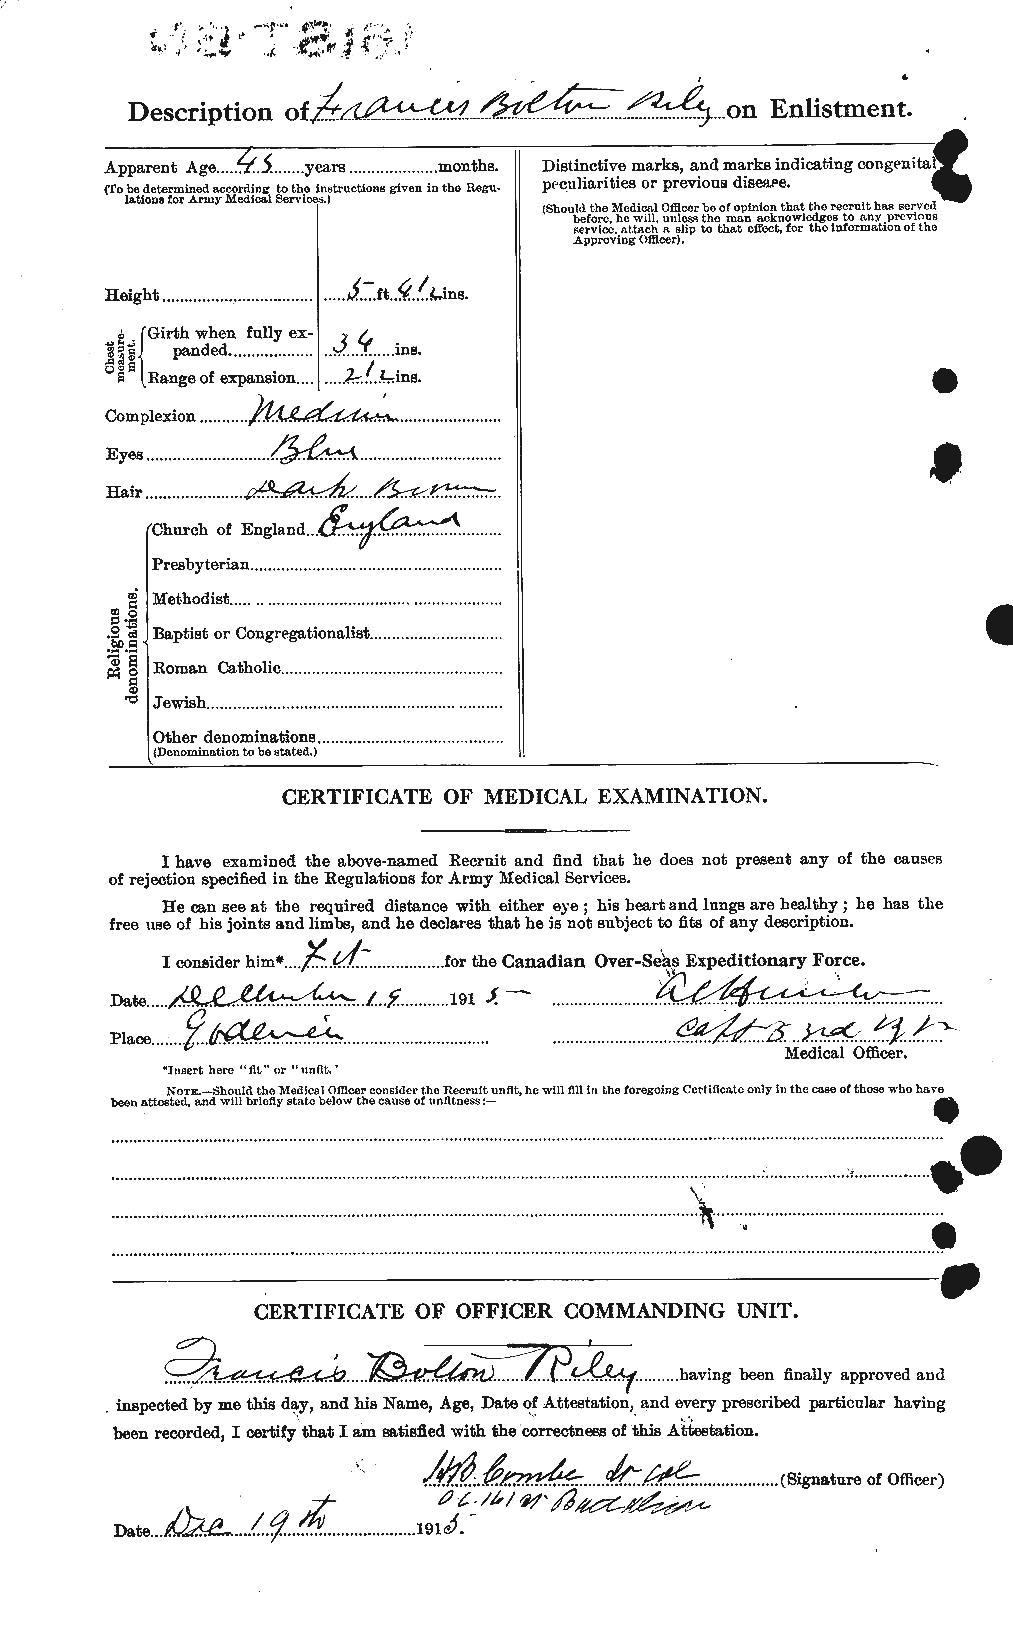 Dossiers du Personnel de la Première Guerre mondiale - CEC 604647b